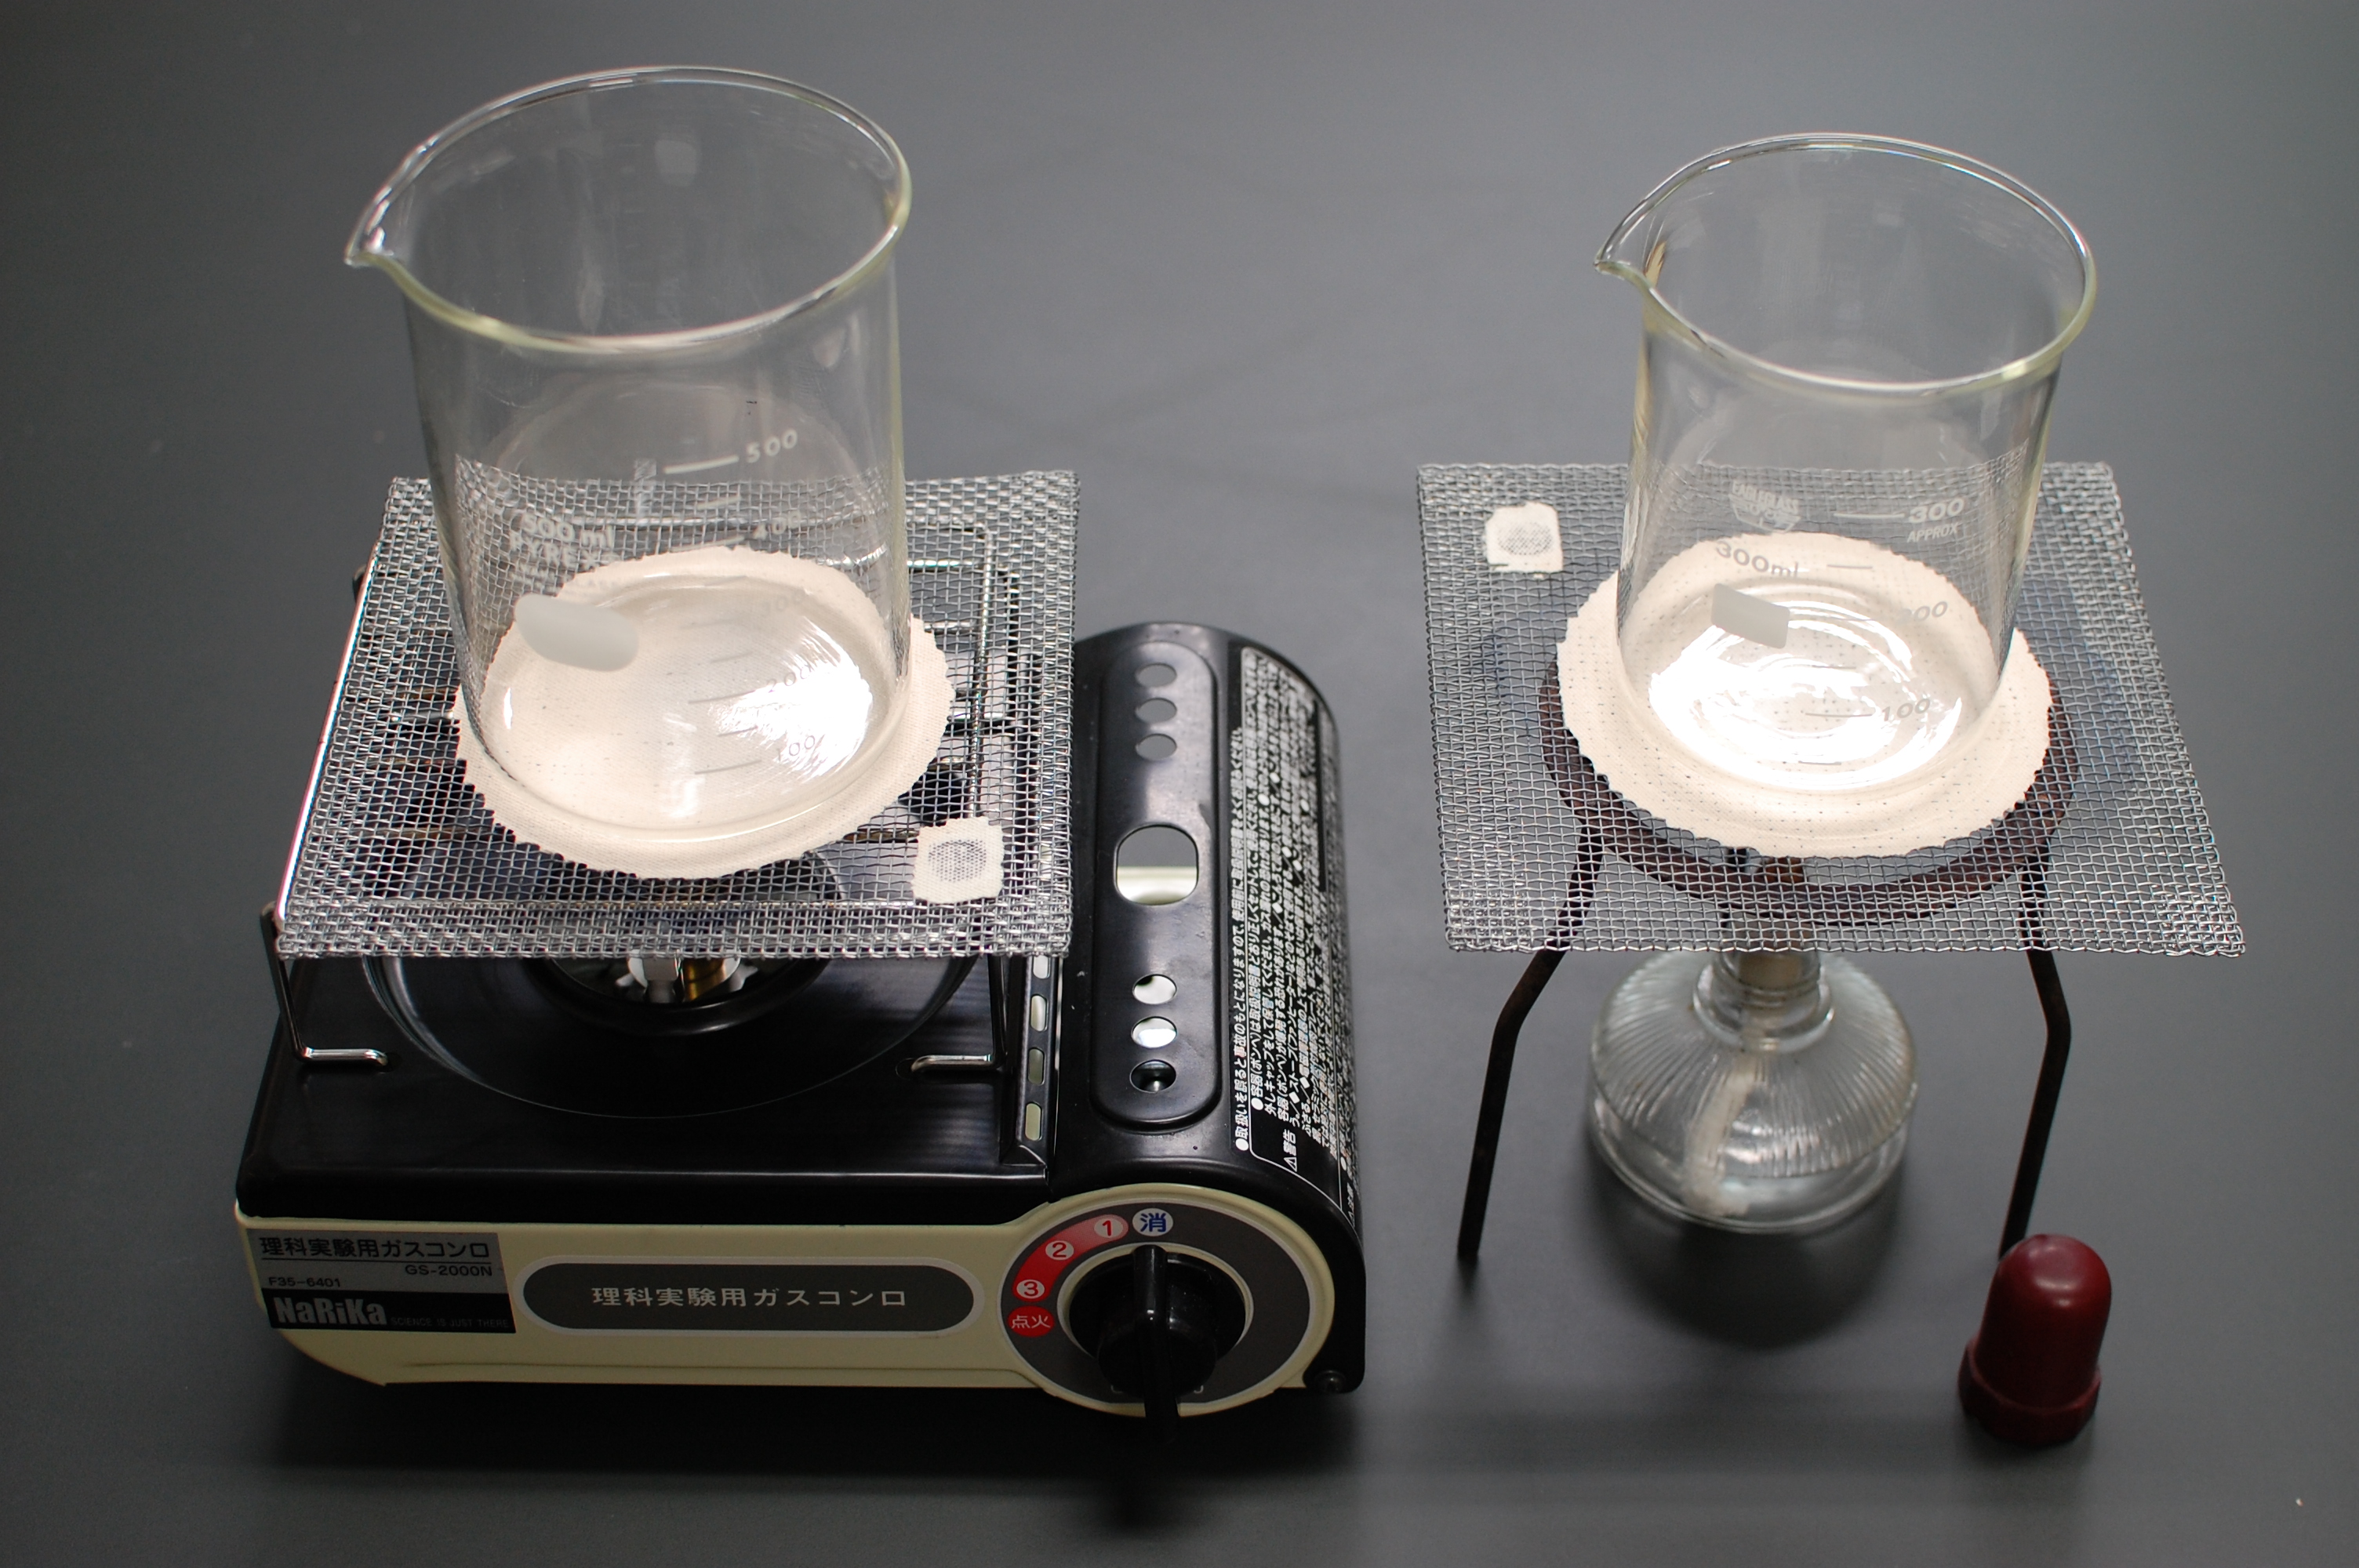 理科実験で使用する加熱器具の変化の画像